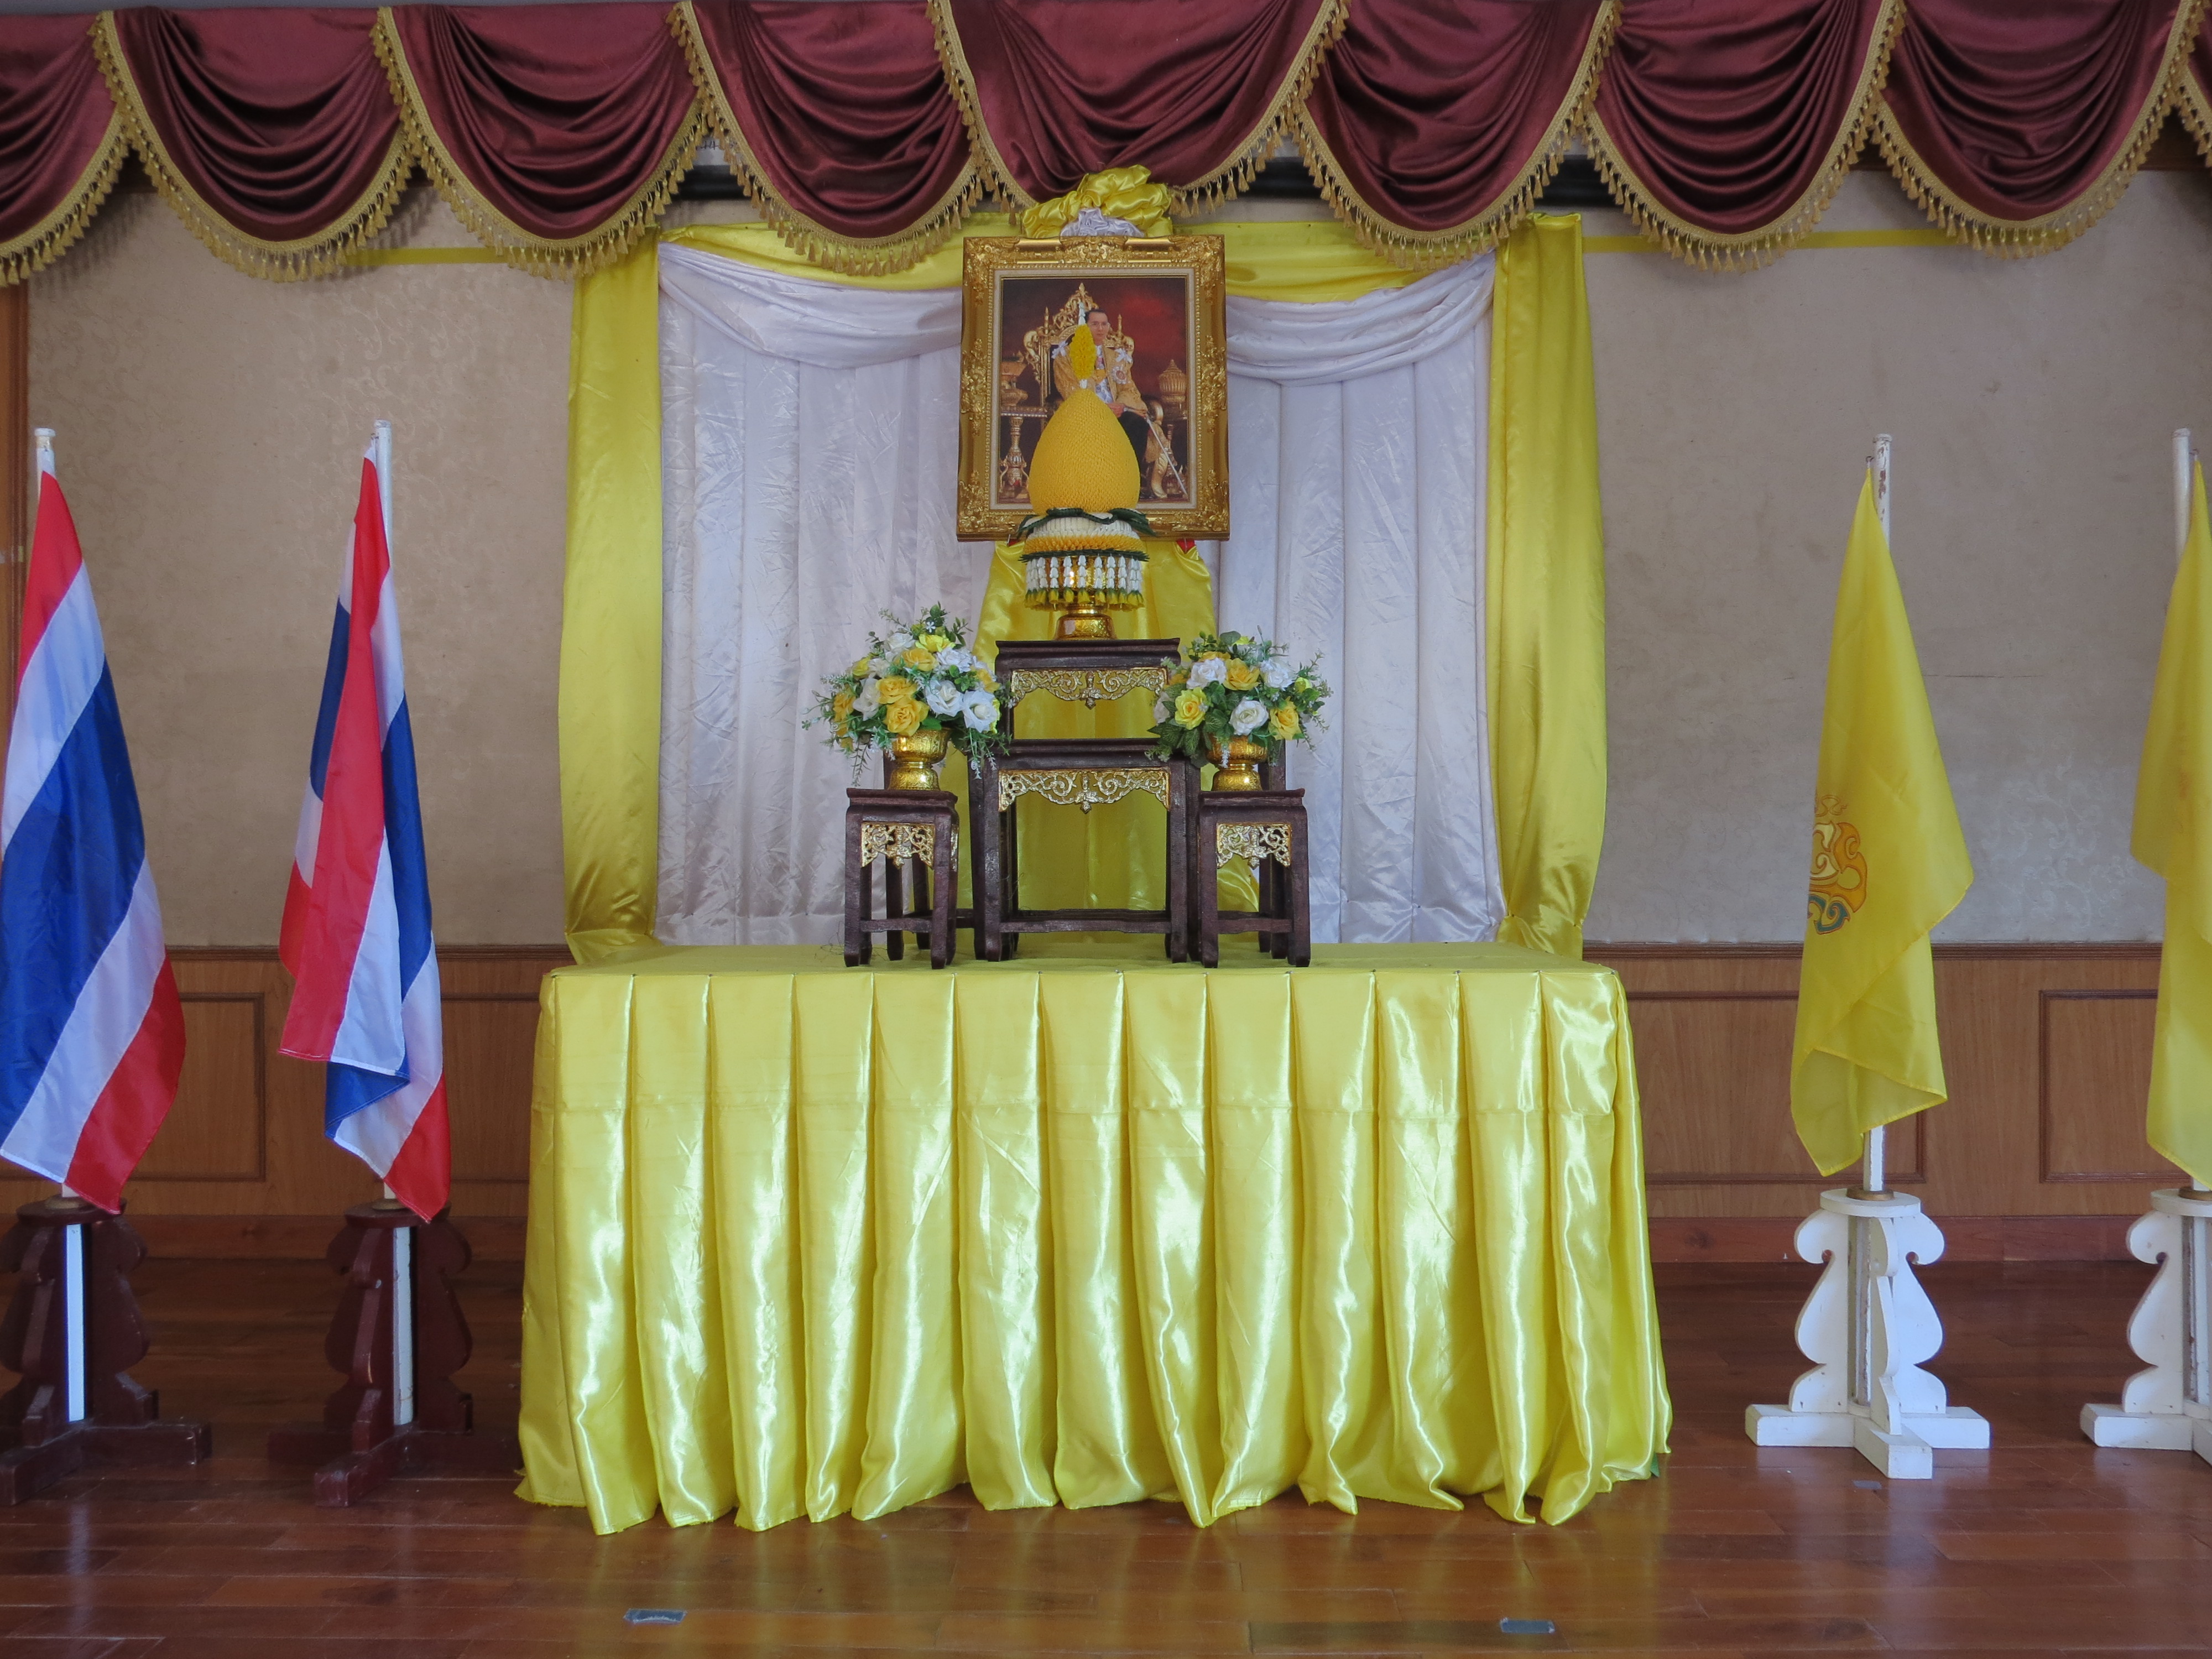 กิจกรรมวันชาติไทย วันพ่อแห่งชาติ และวันคล้ายวันพระราชสมภพพระบาทสมเด็จพระบรมชนกาธิเบศร มหาภูมิพลอดุลยเดชมหาราช บรมนาถบพิตร ประจำปีการศึกษา 2565